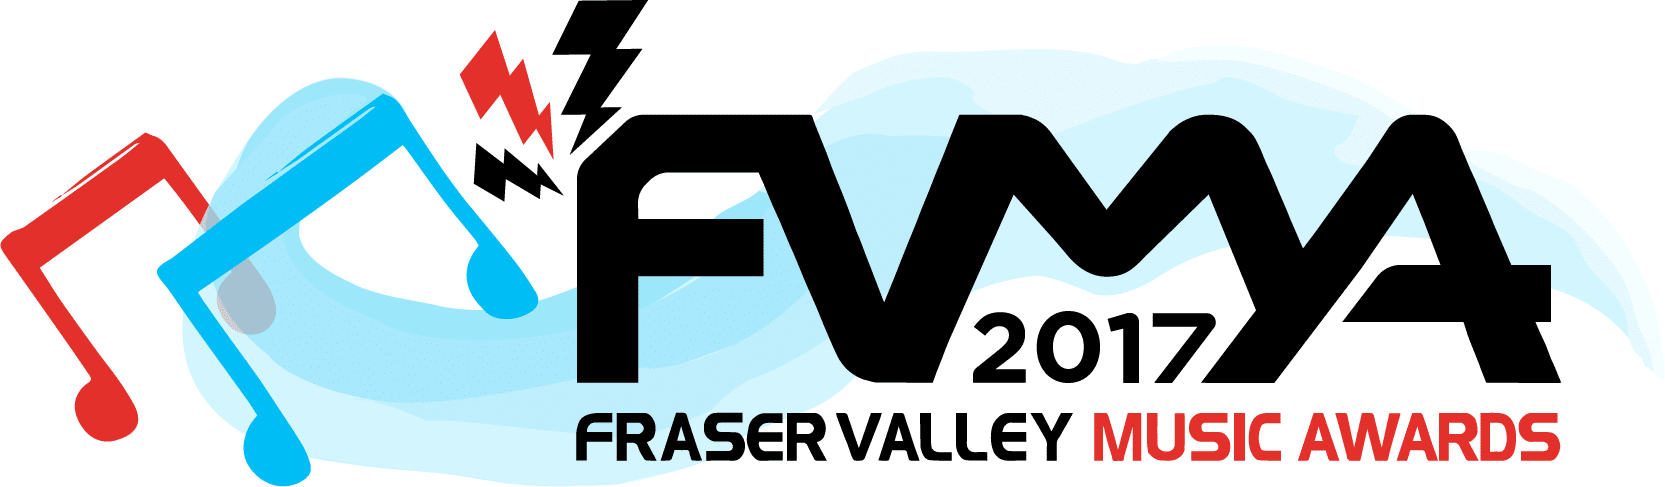 FVMA 2017 Logo